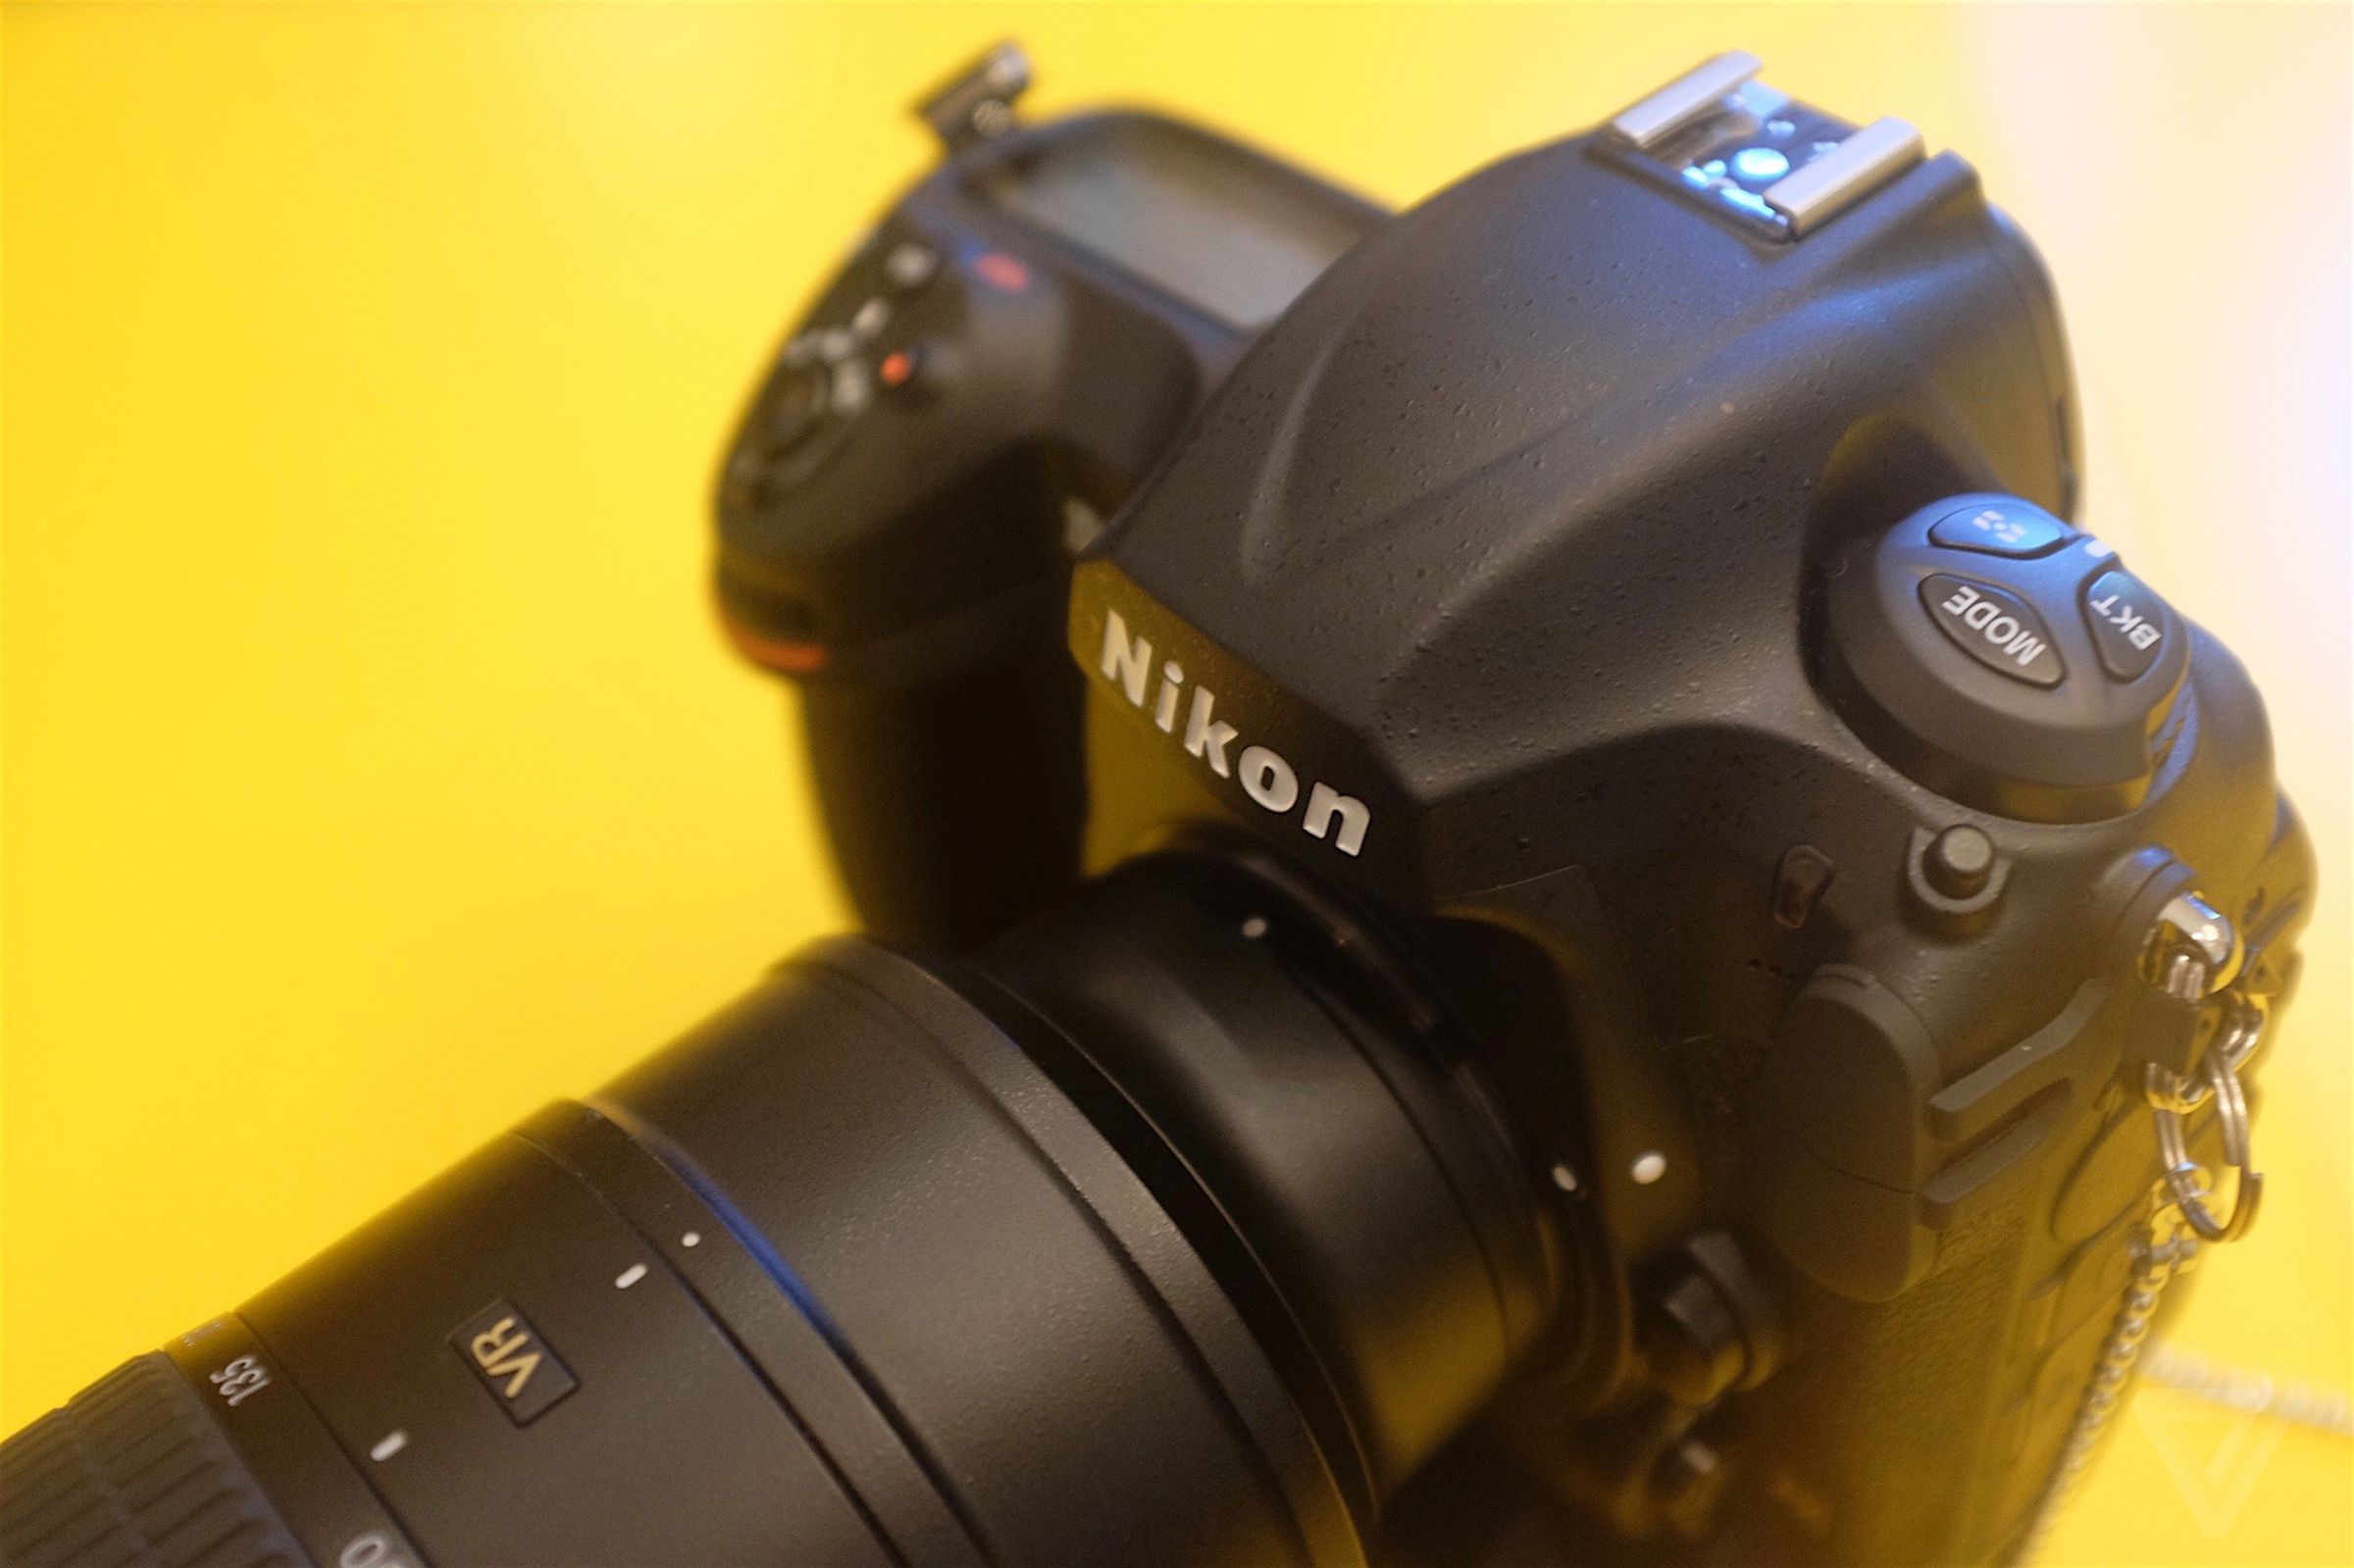 Nikon D5 and D500 photos